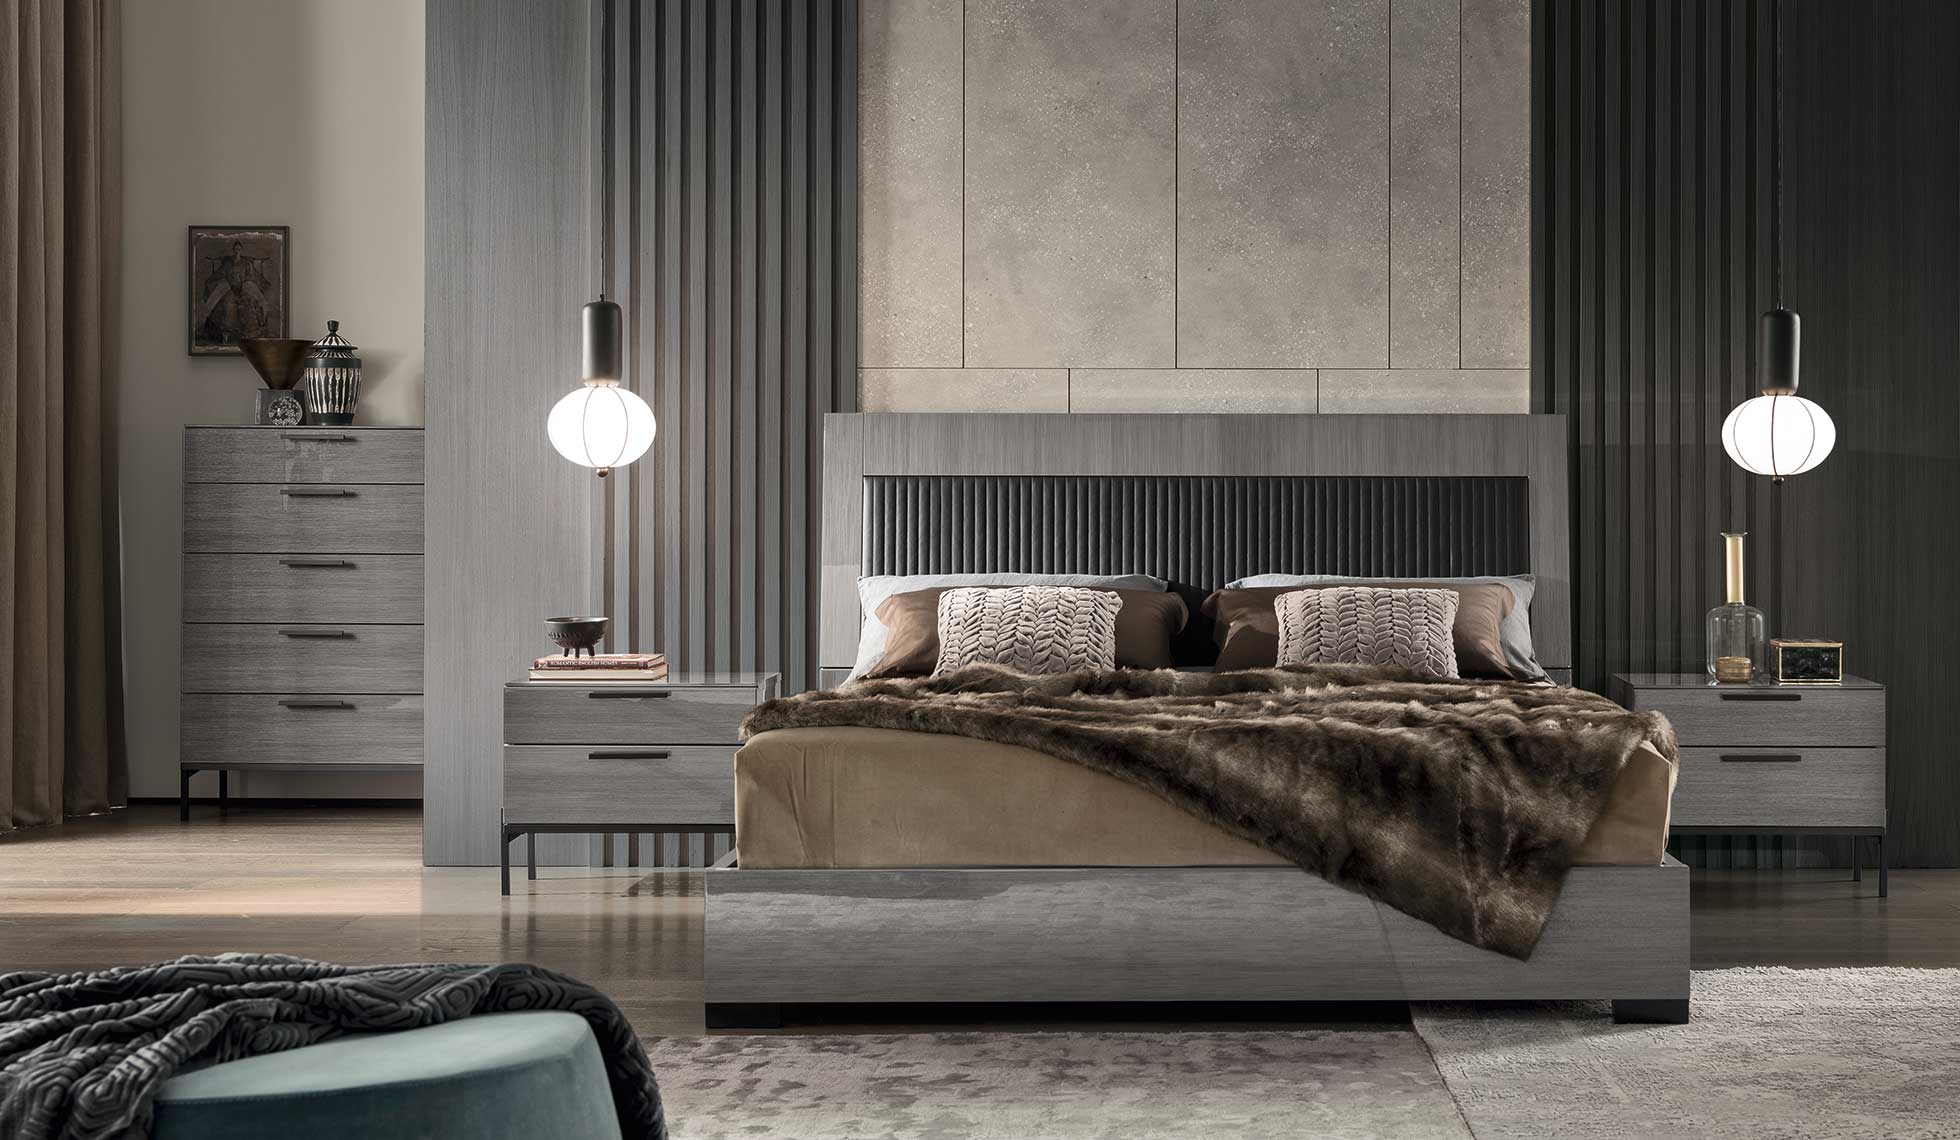 Alf Italia Bedroom Sets Novecento Bedroom Collection